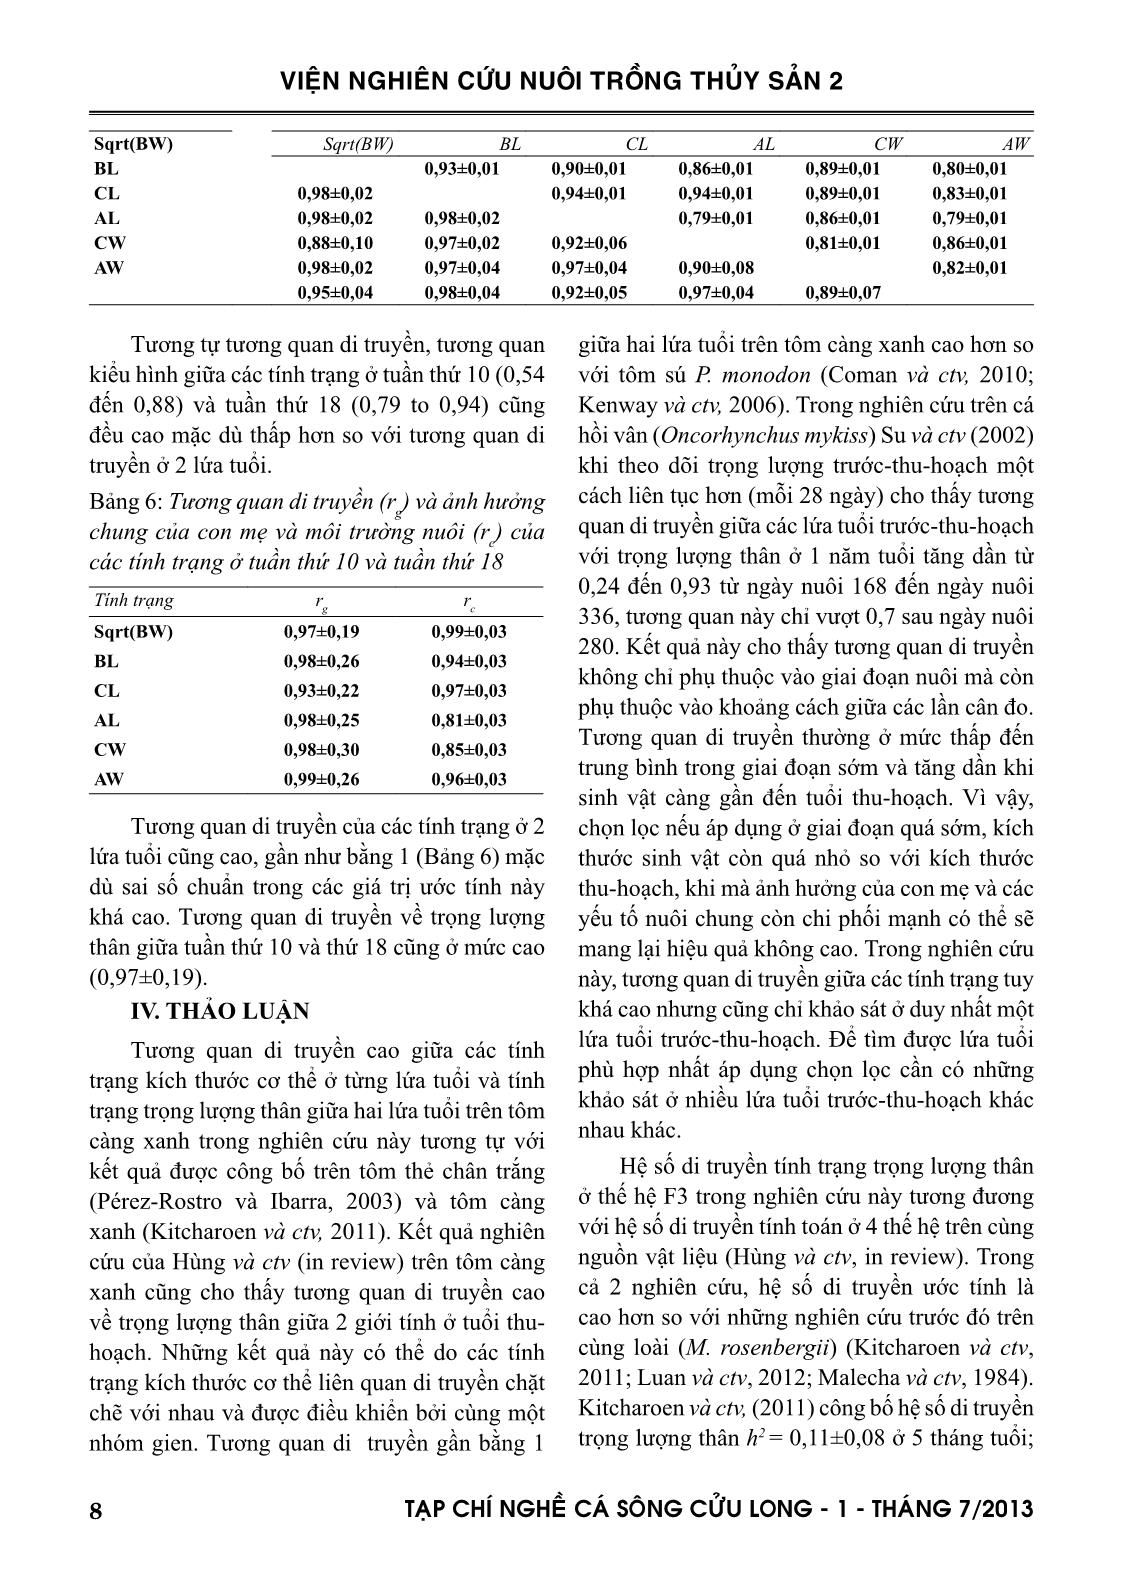 Tạp chí Nghề cá sông Cửu Long - Số 01/2013 trang 8